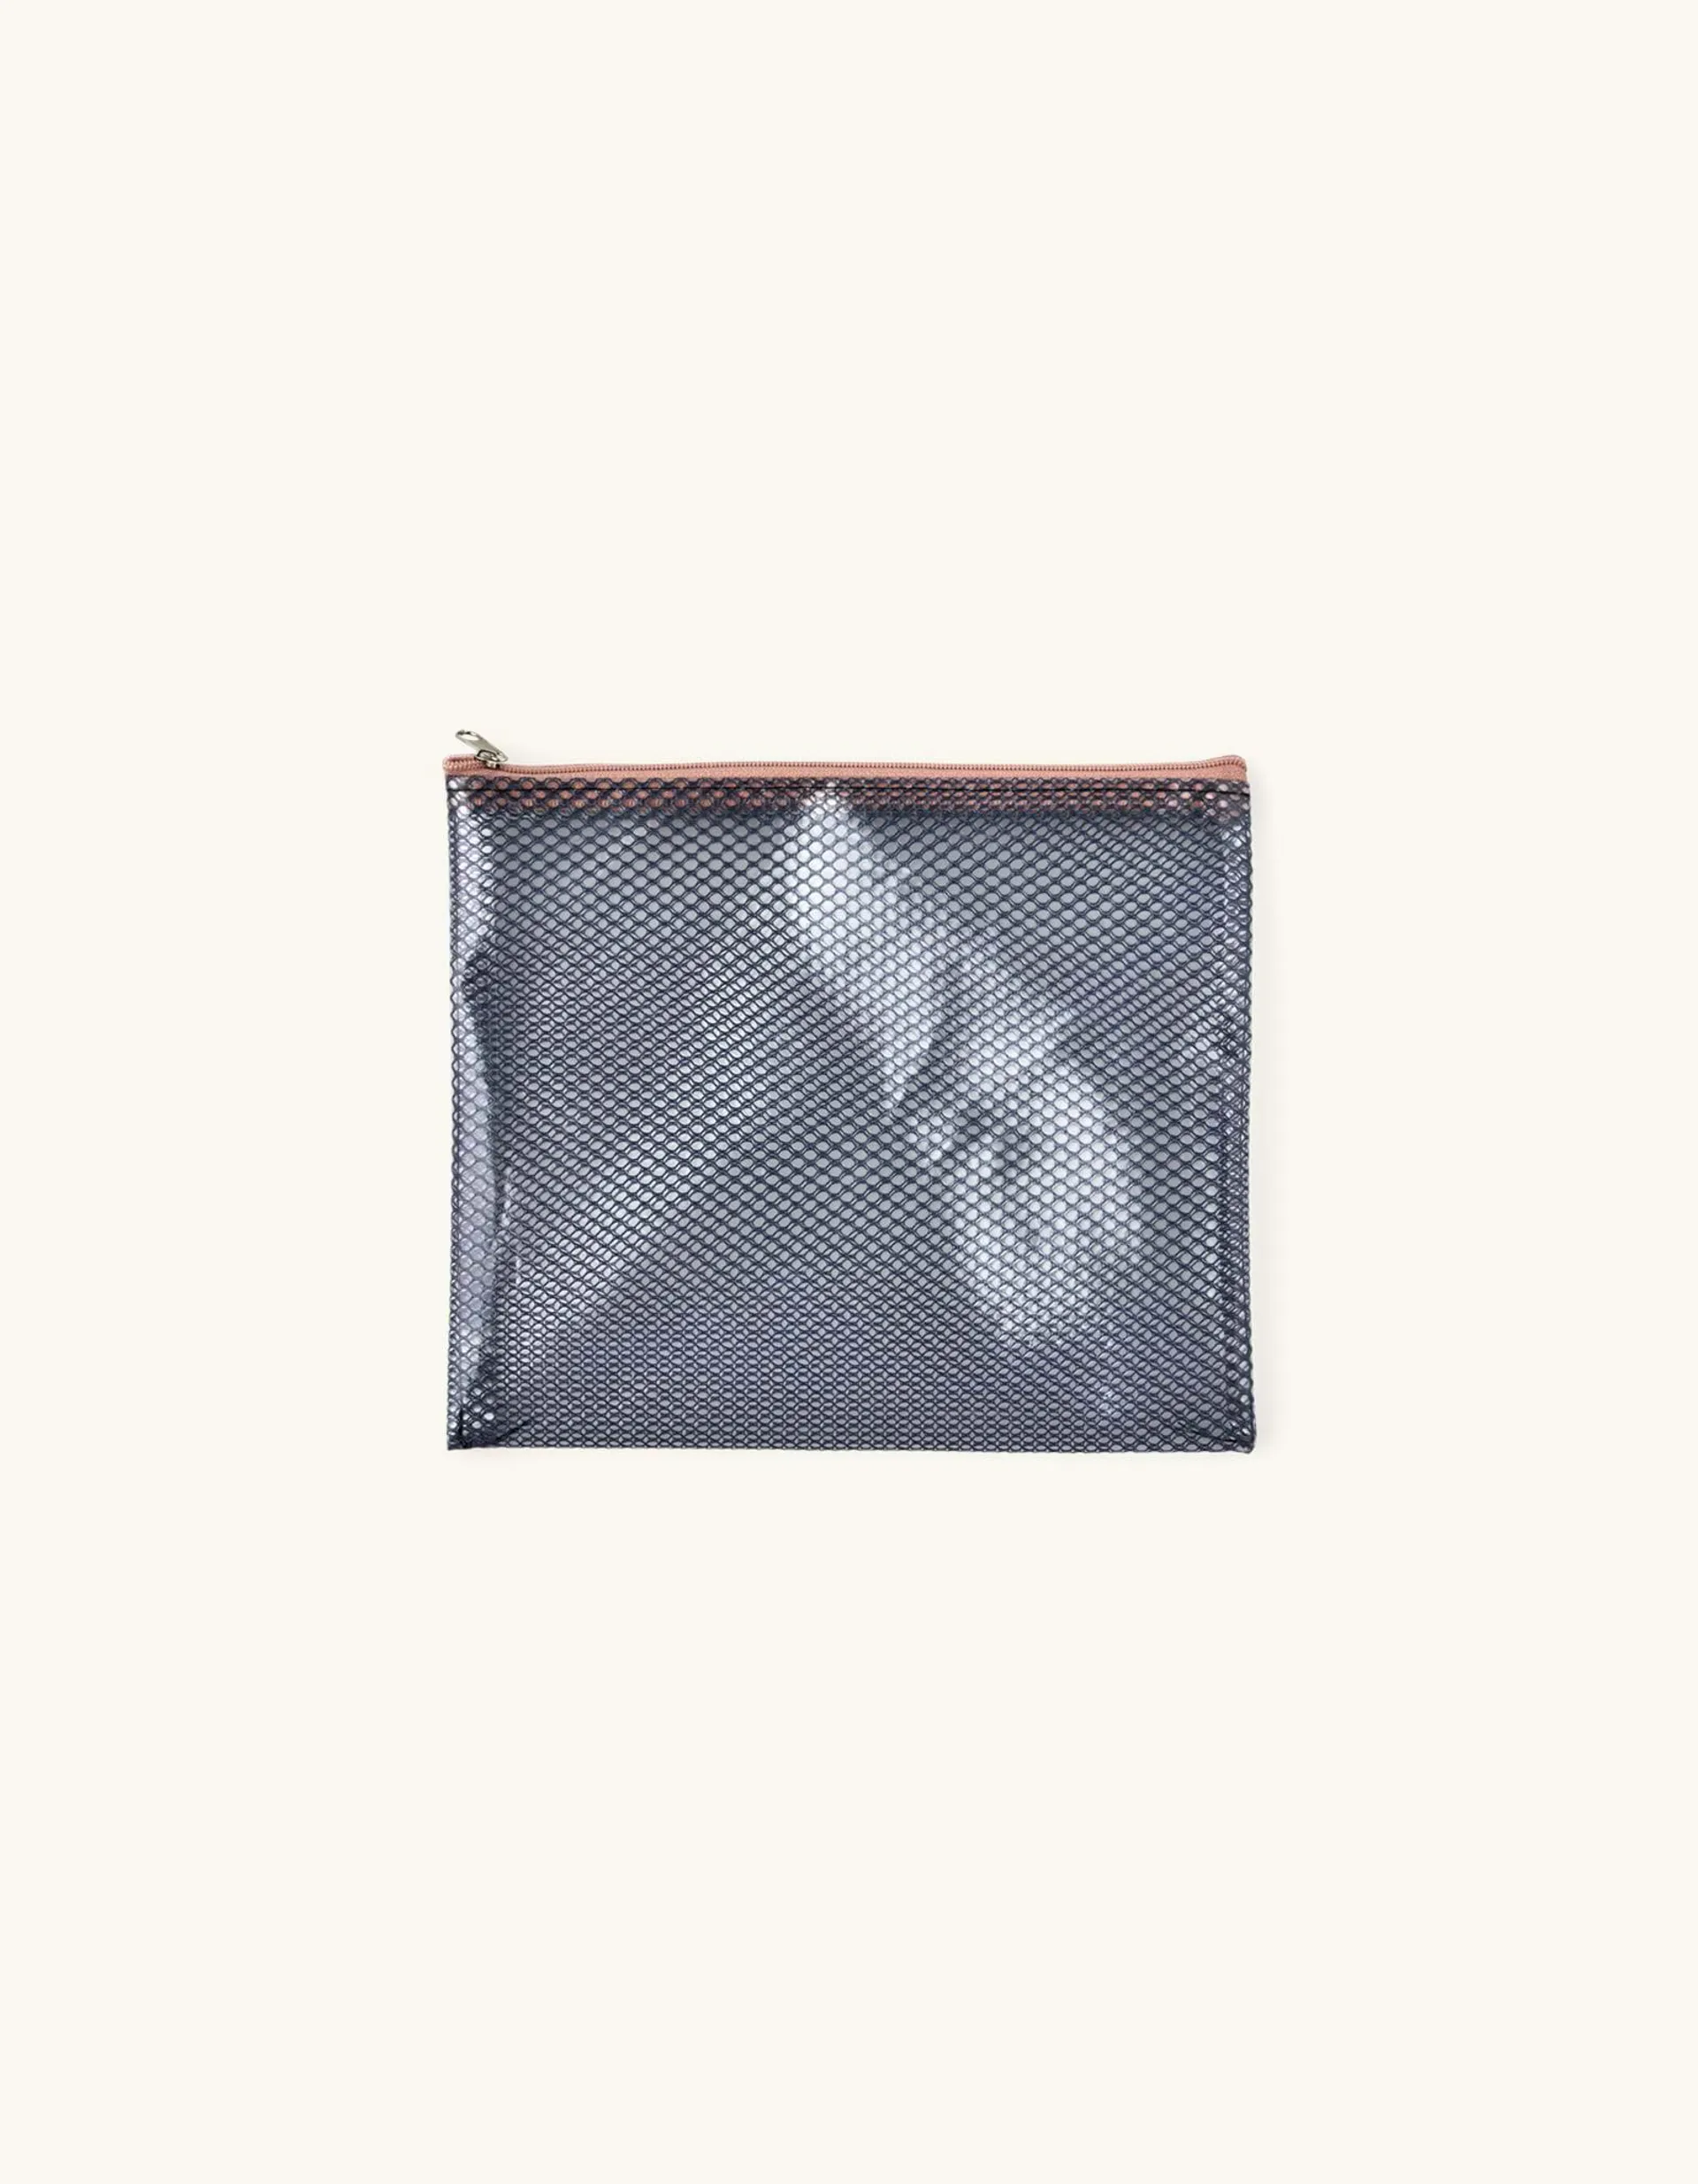 Netztasche Polyester/Polyethylen. 21 x 18,5 cm.